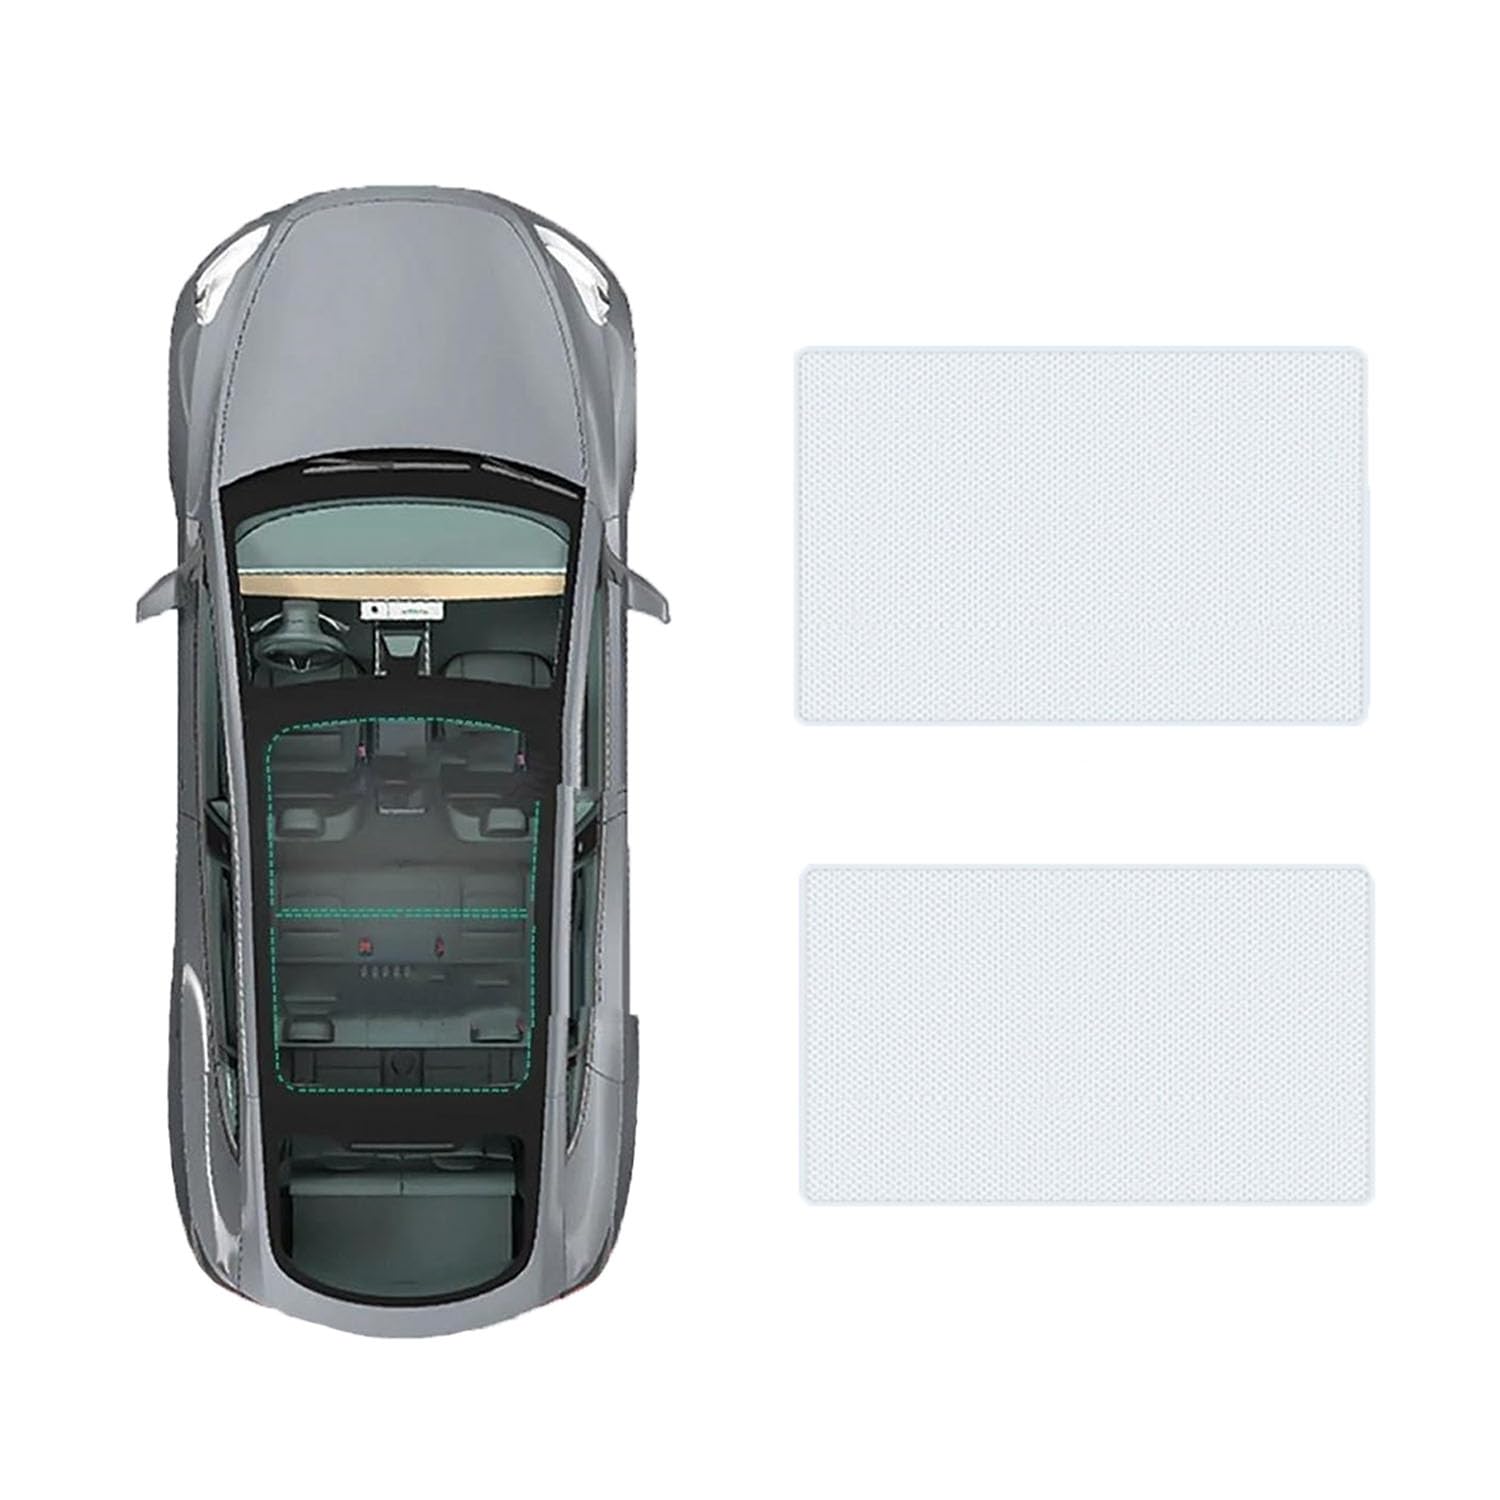 Auto-Schiebedach-Beschattung Für Buick envision plus 2021-,Auto Schiebedach Sonnenschutz Dachfenster Dach Wärme Isolierung Beschattung Innen,A-Gray white regular Style von LiuROSE